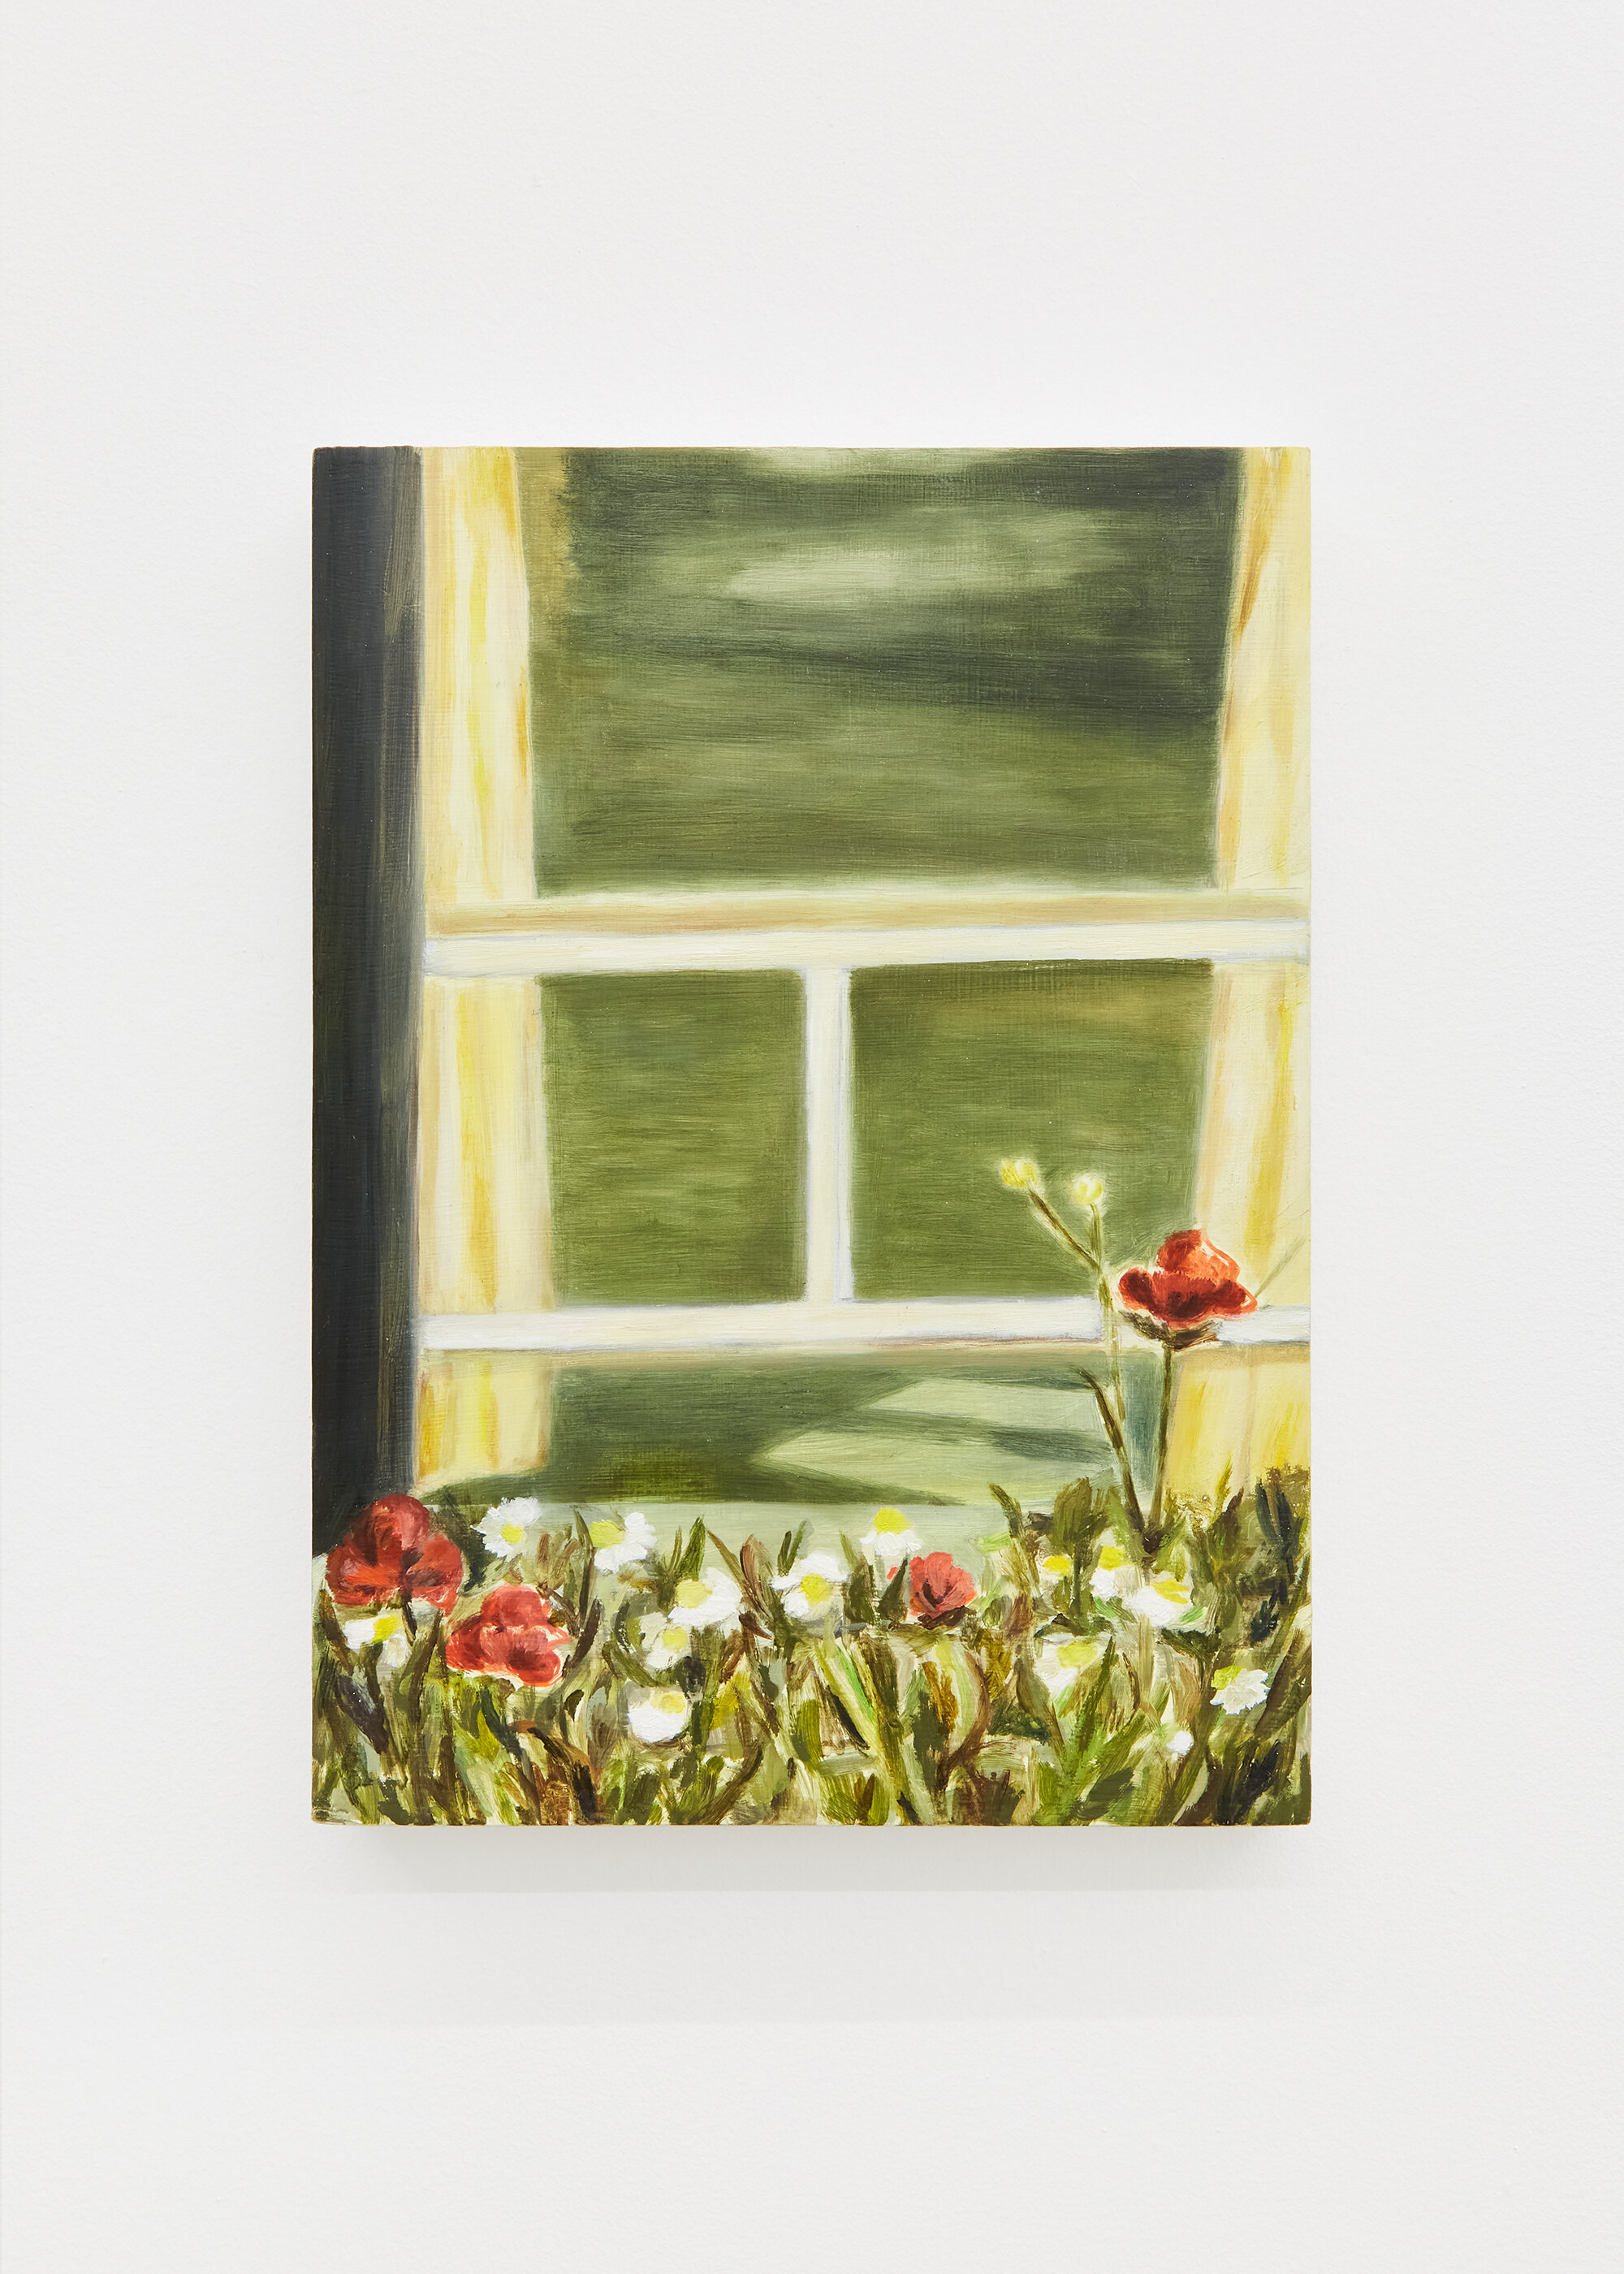  Zoë Carlon,  Window in Spring , 2020. Oil on board, 20 x 27.5 cm  